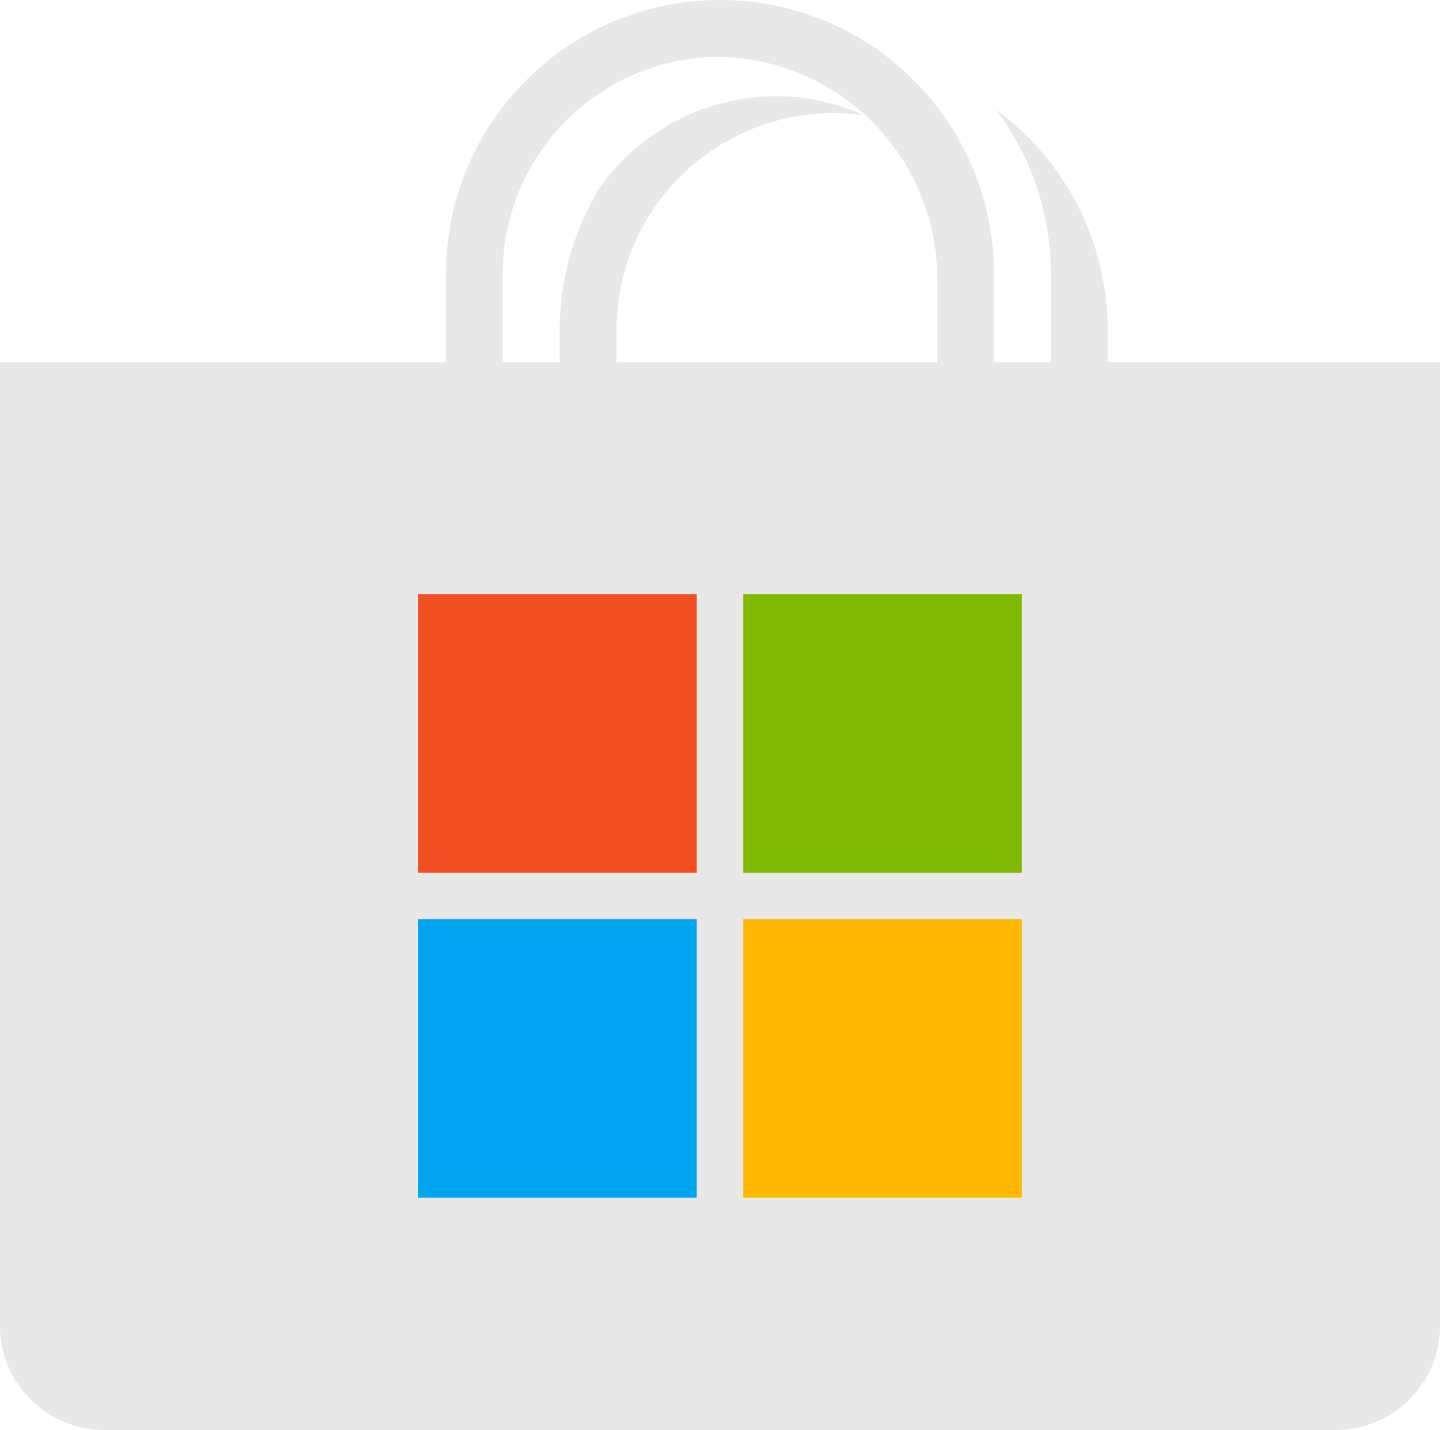 microsoft store logo 2 - Microsoft Store Logo